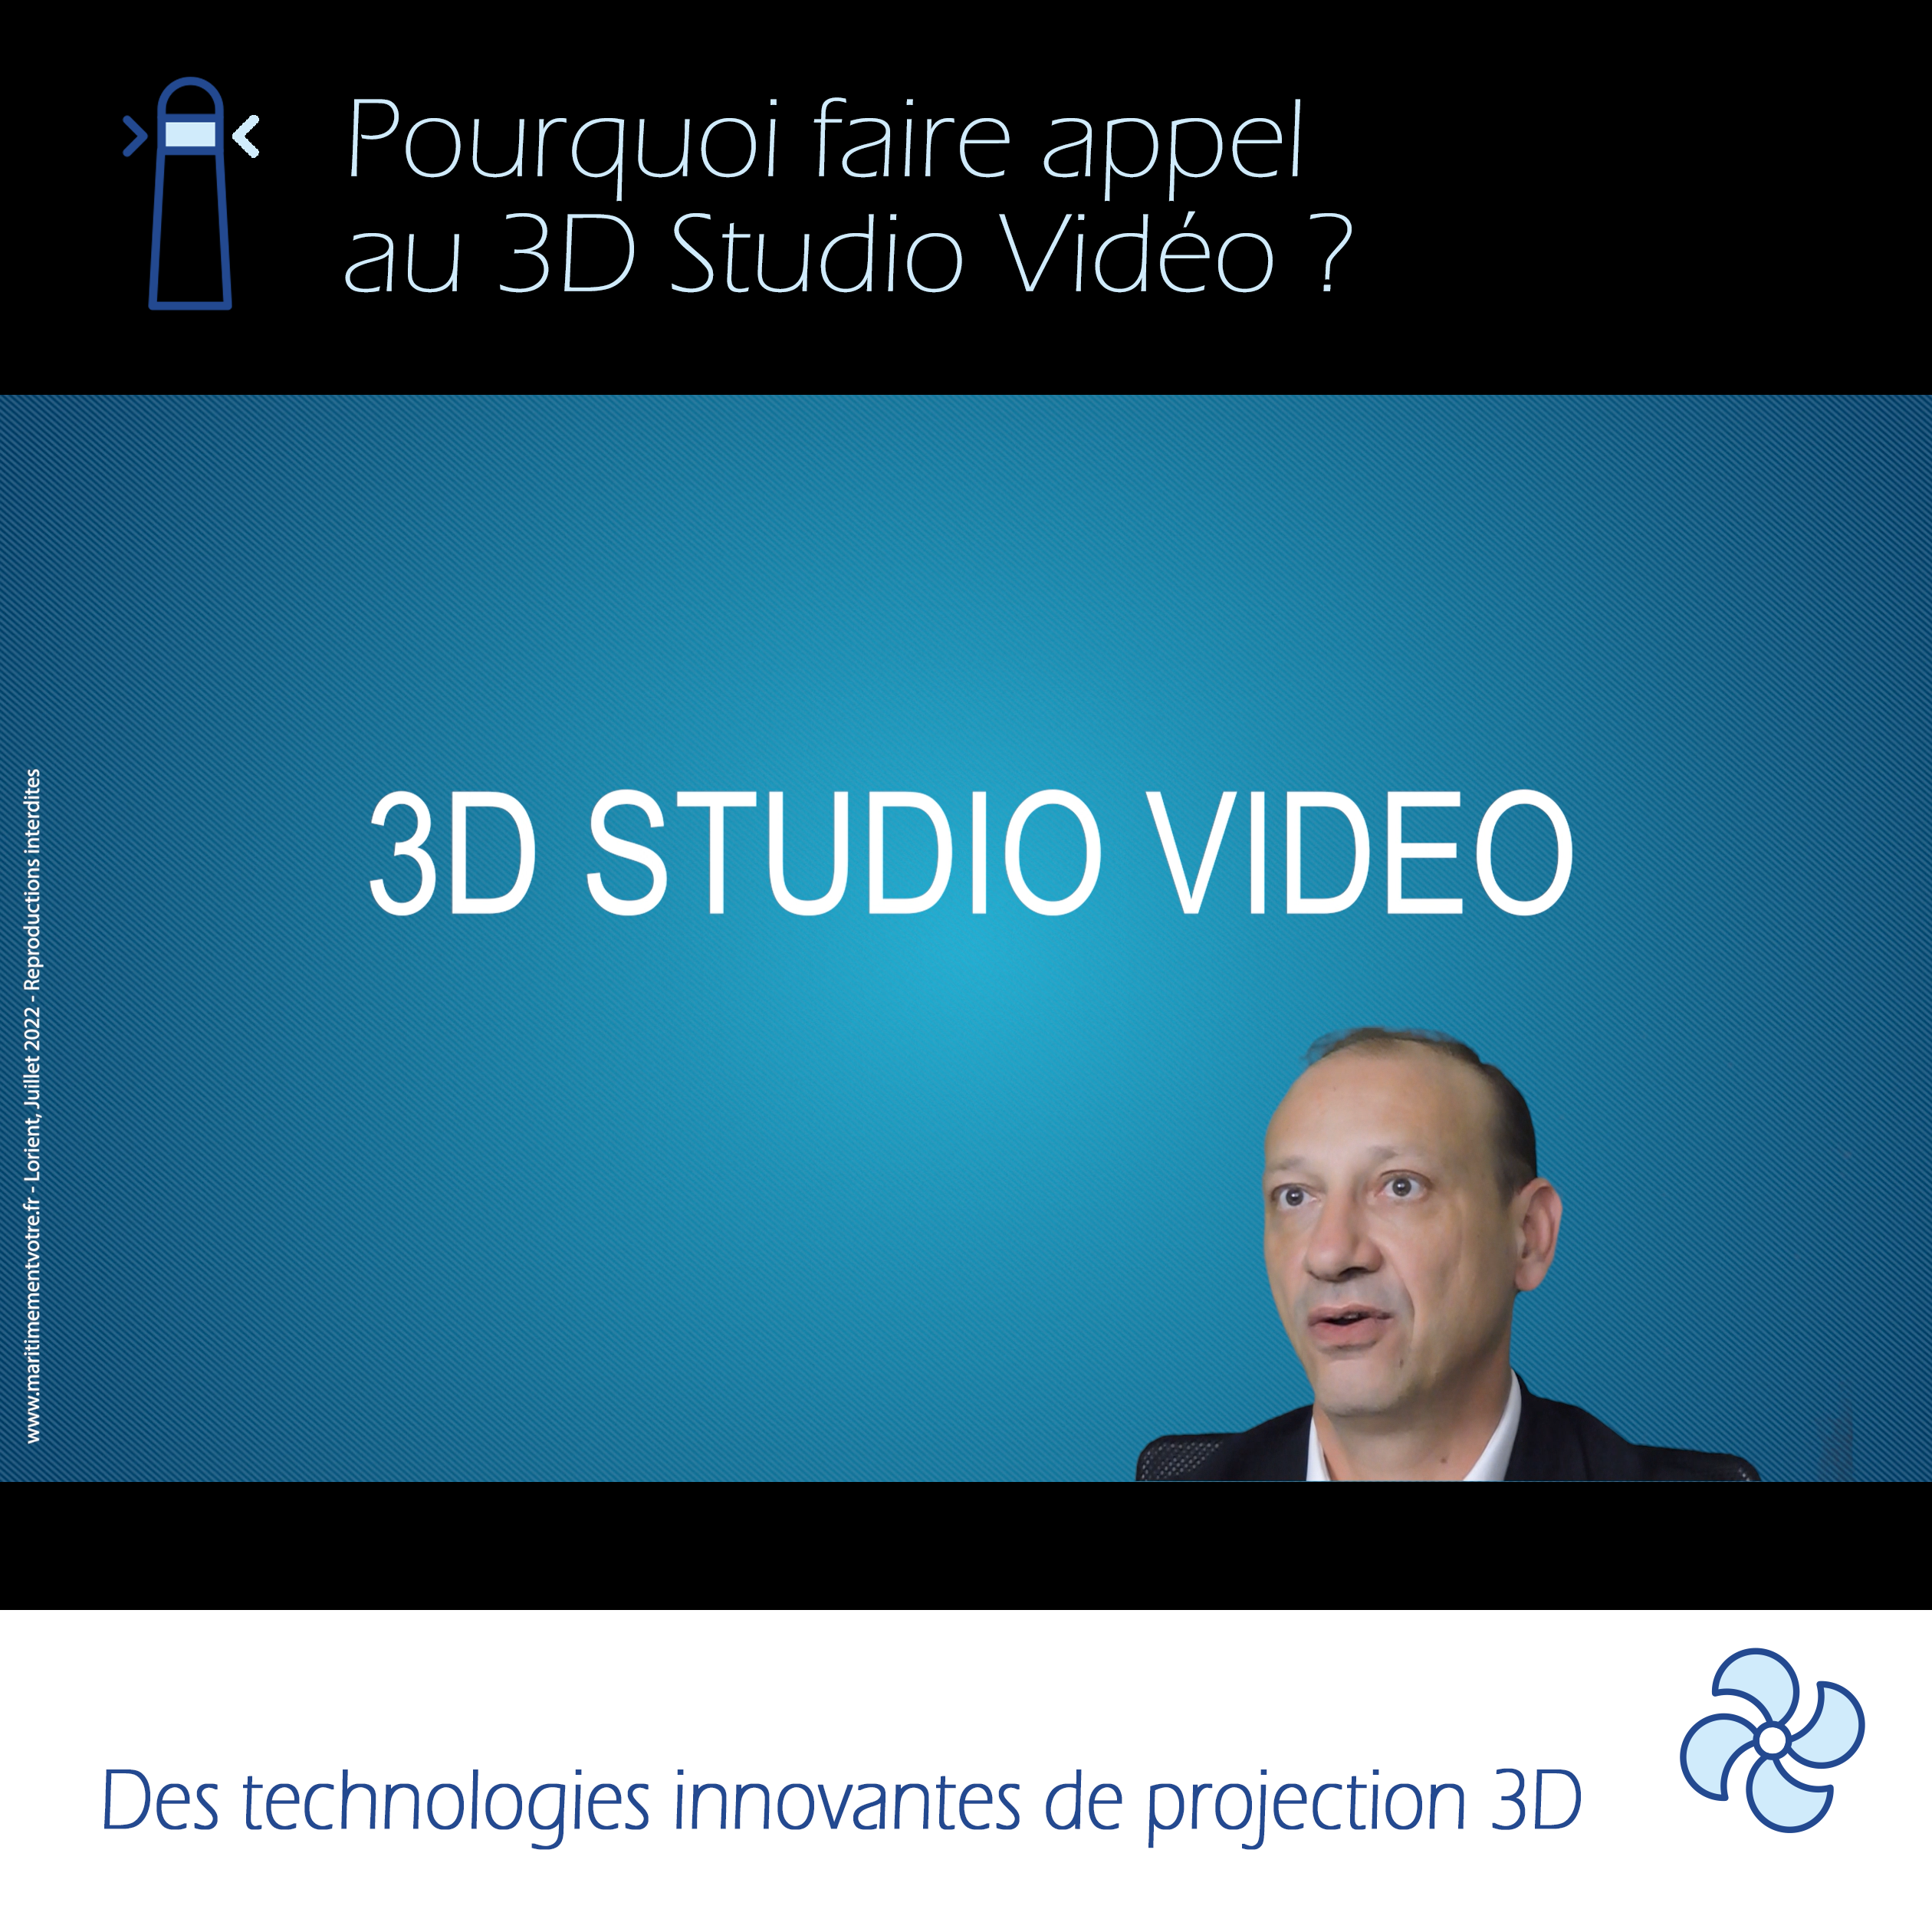 3D studio video